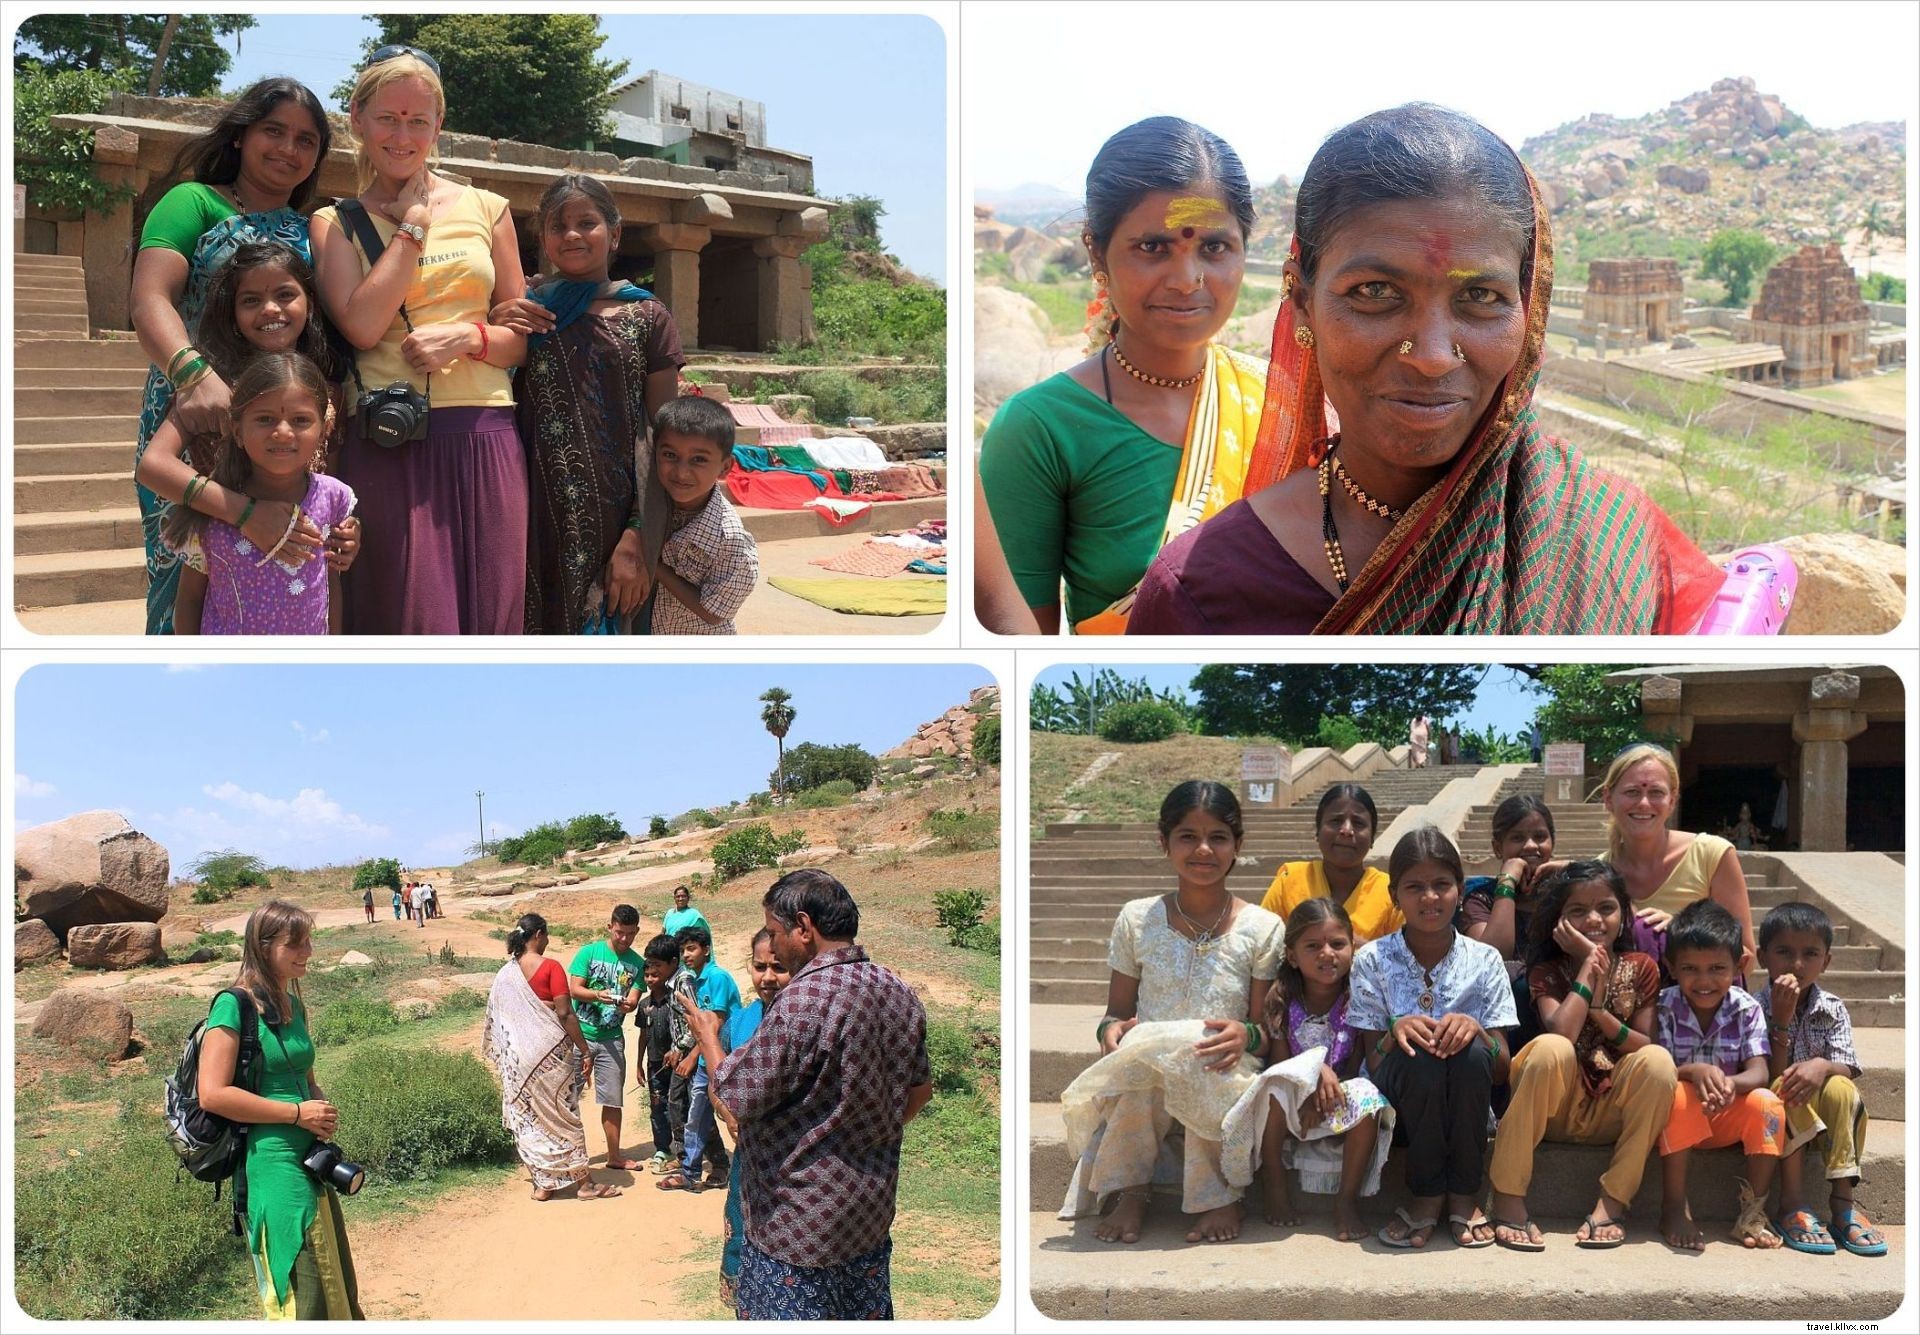 Viaggiare in India:un esperienza che cambia davvero la vita